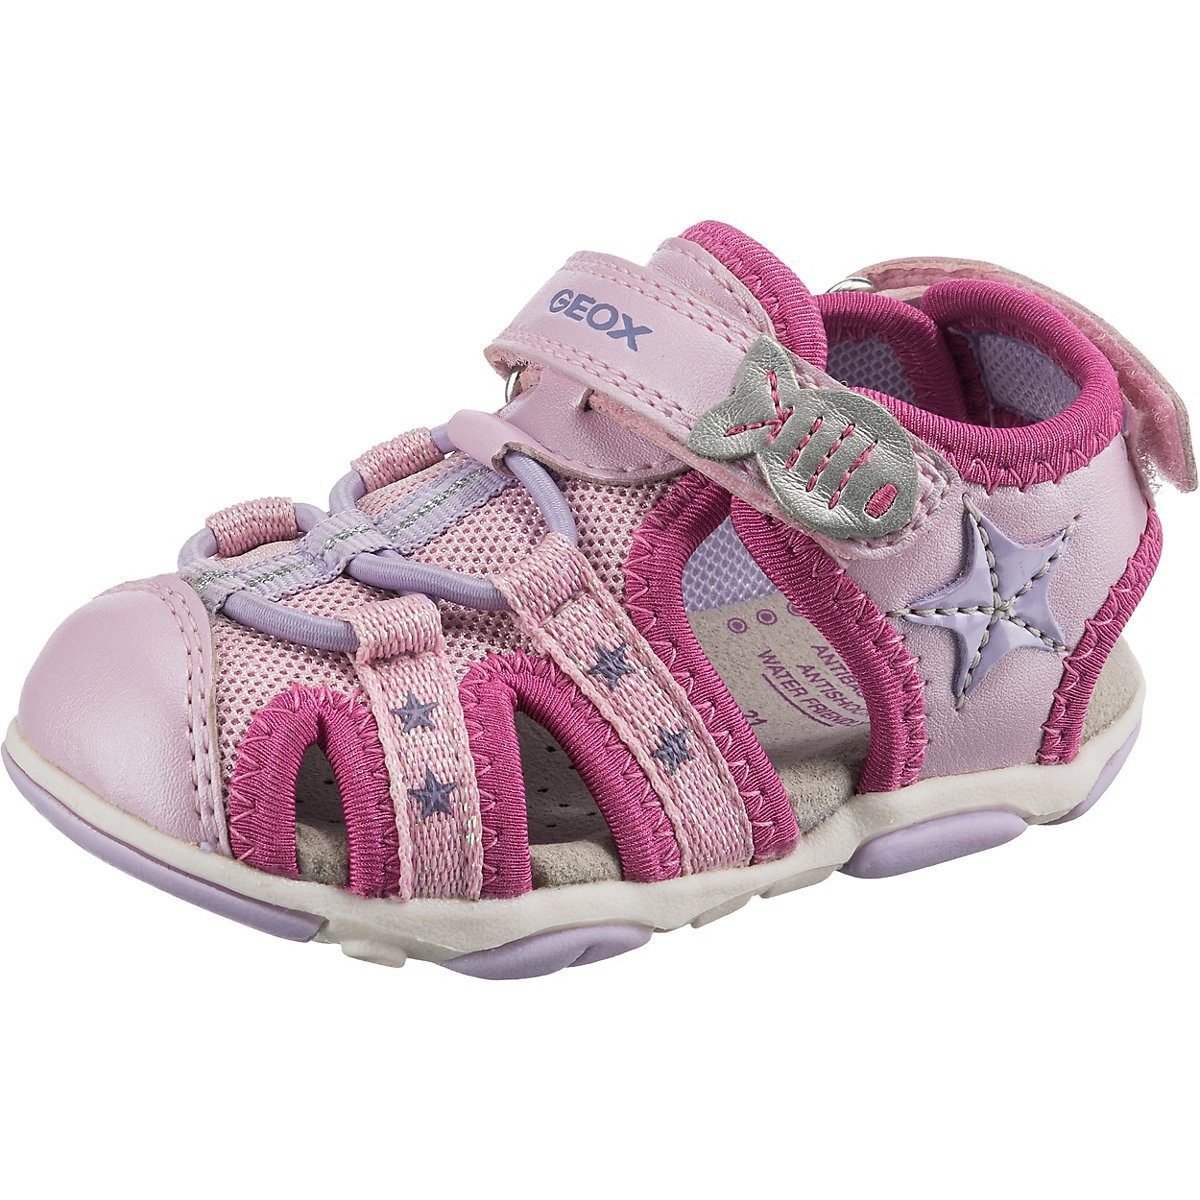 Günstige Geox Mädchen Schuhe » Geox Schuhmode online kaufen | OTTO